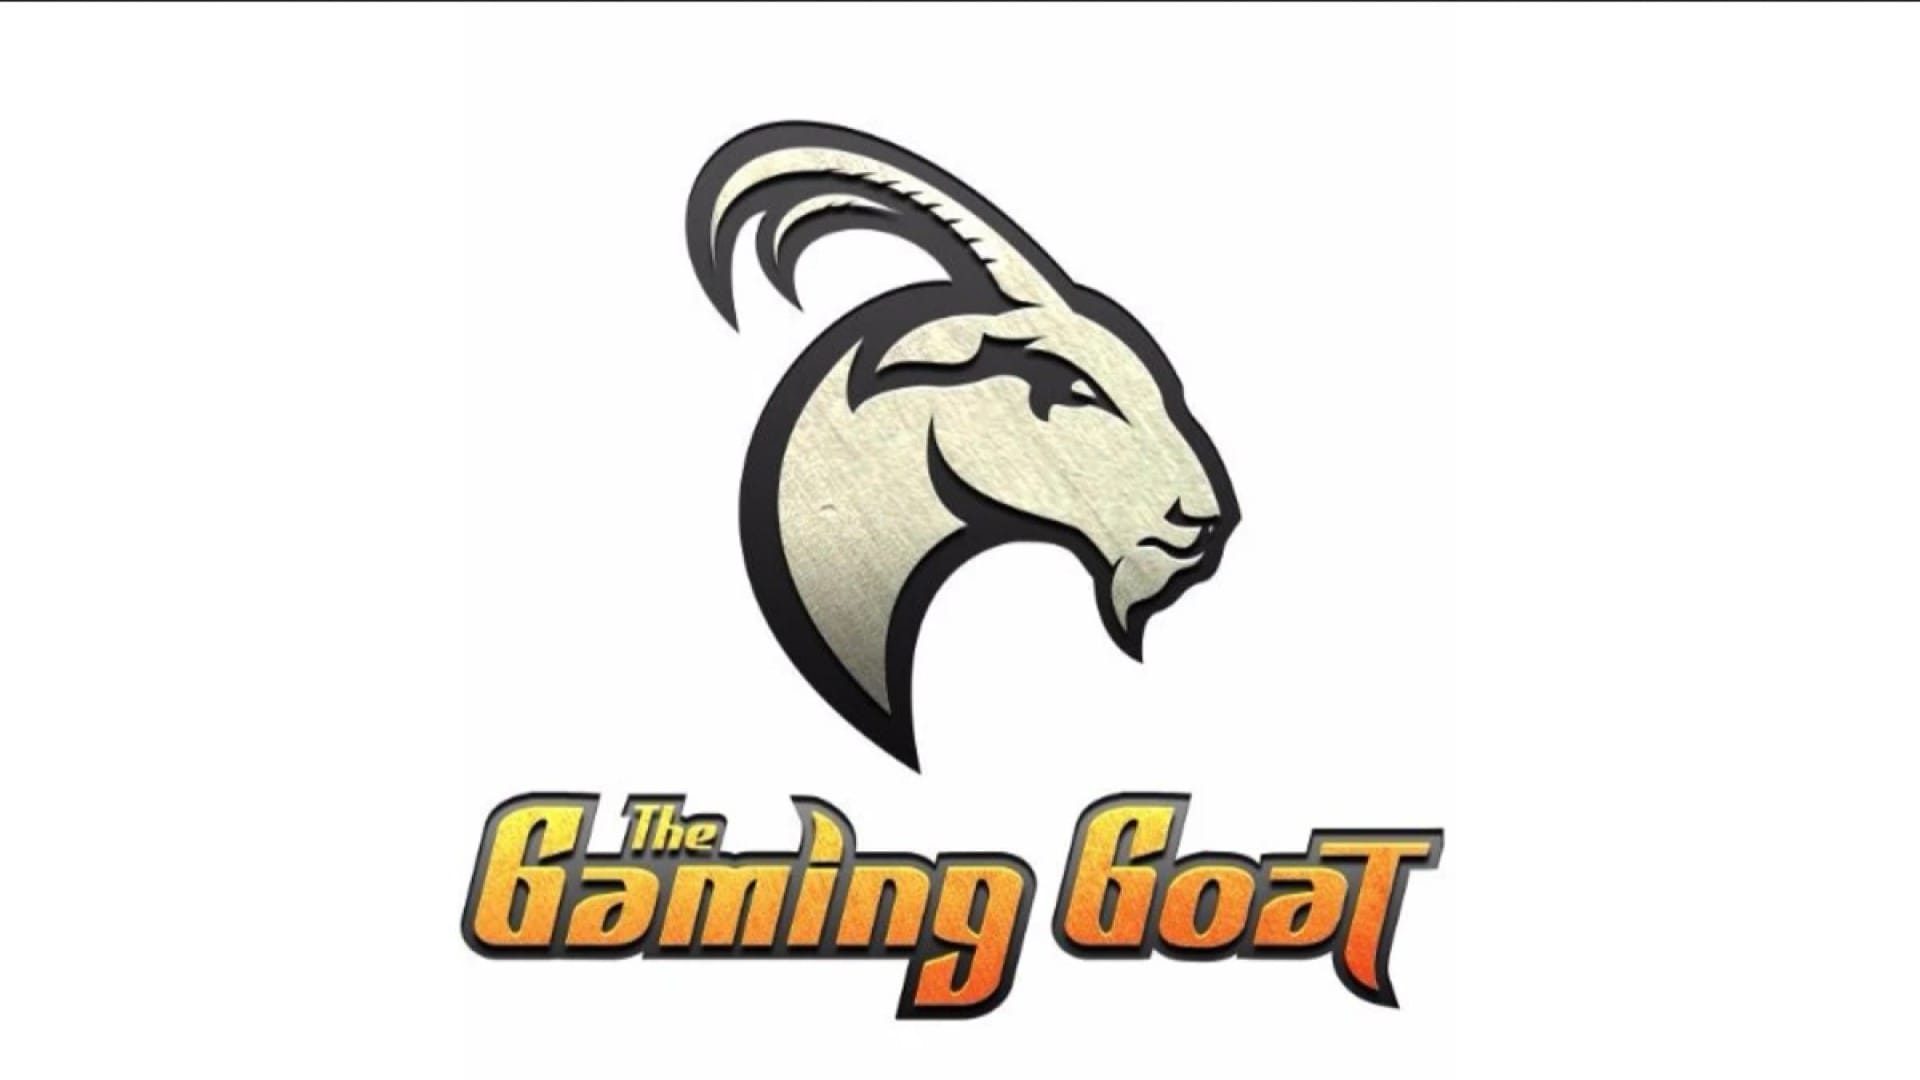 The logo for TGG